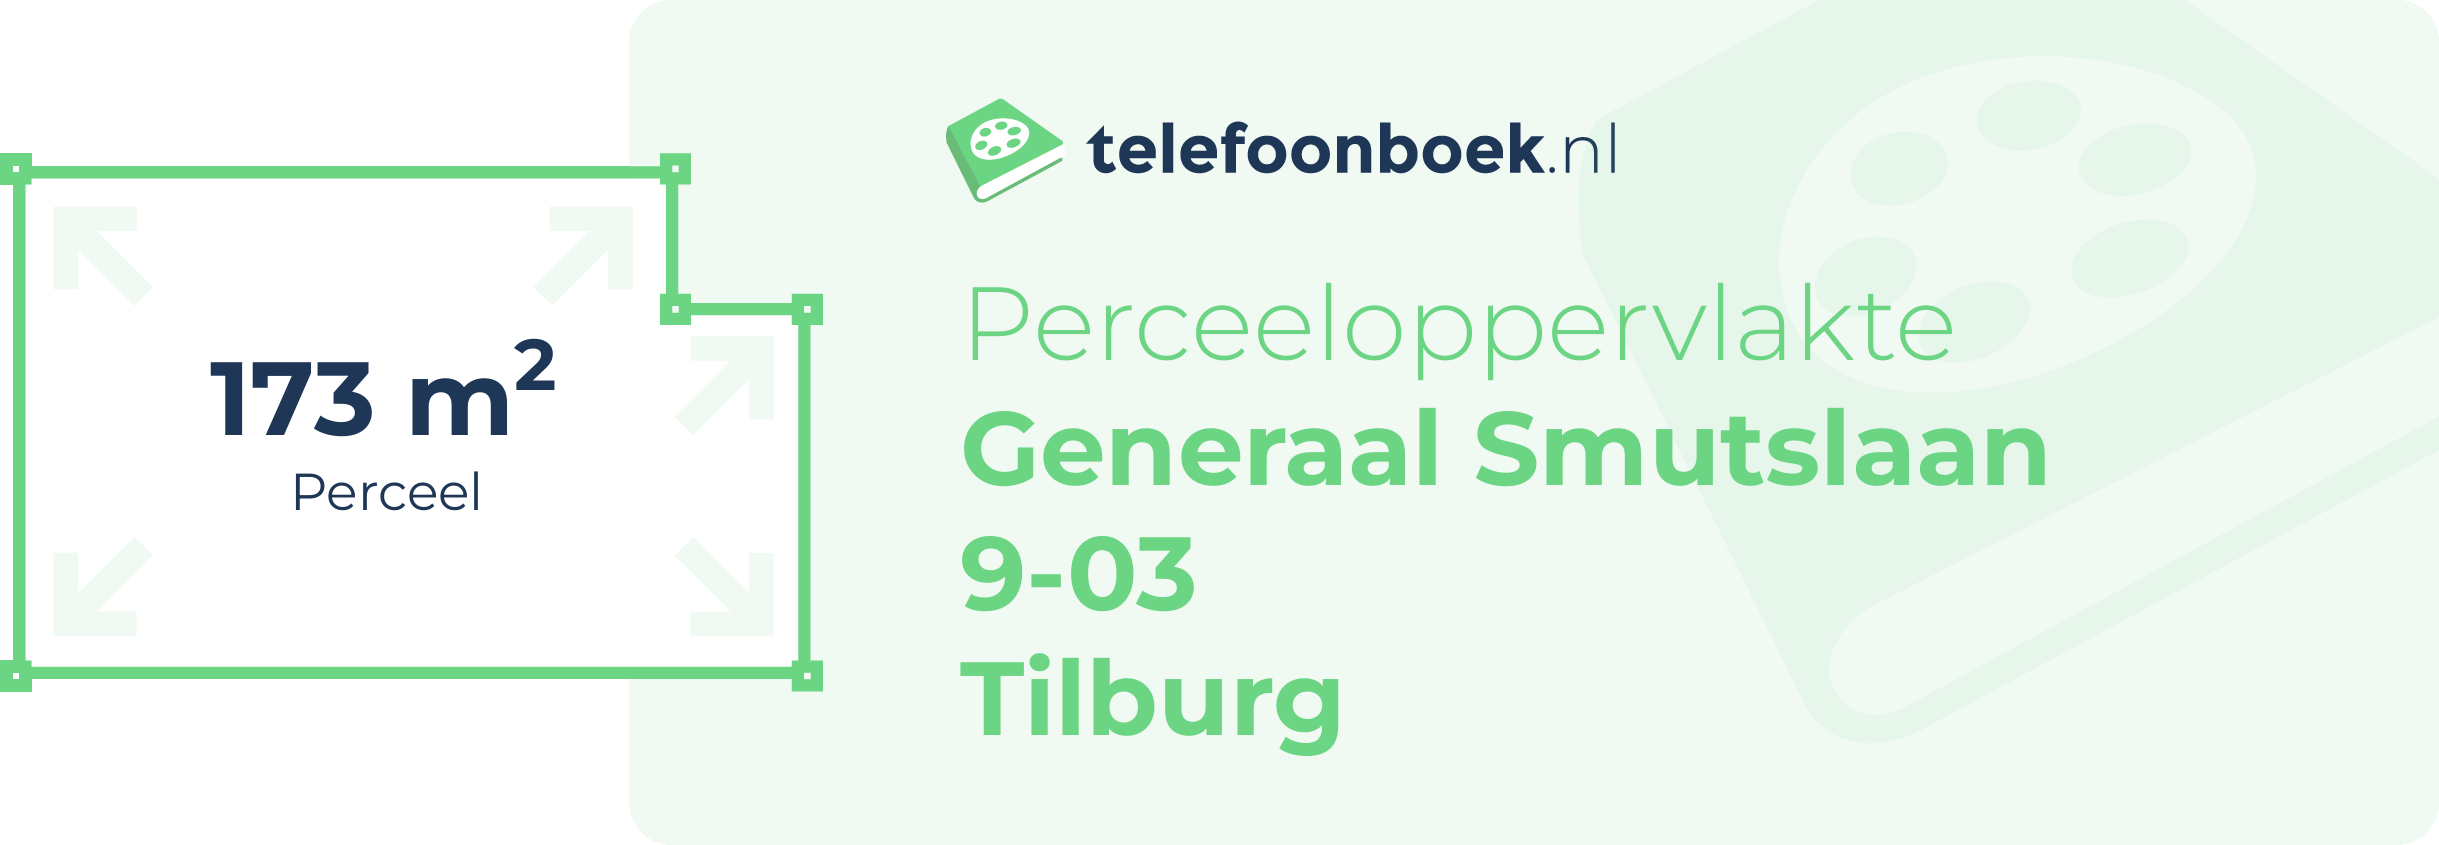 Perceeloppervlakte Generaal Smutslaan 9-03 Tilburg